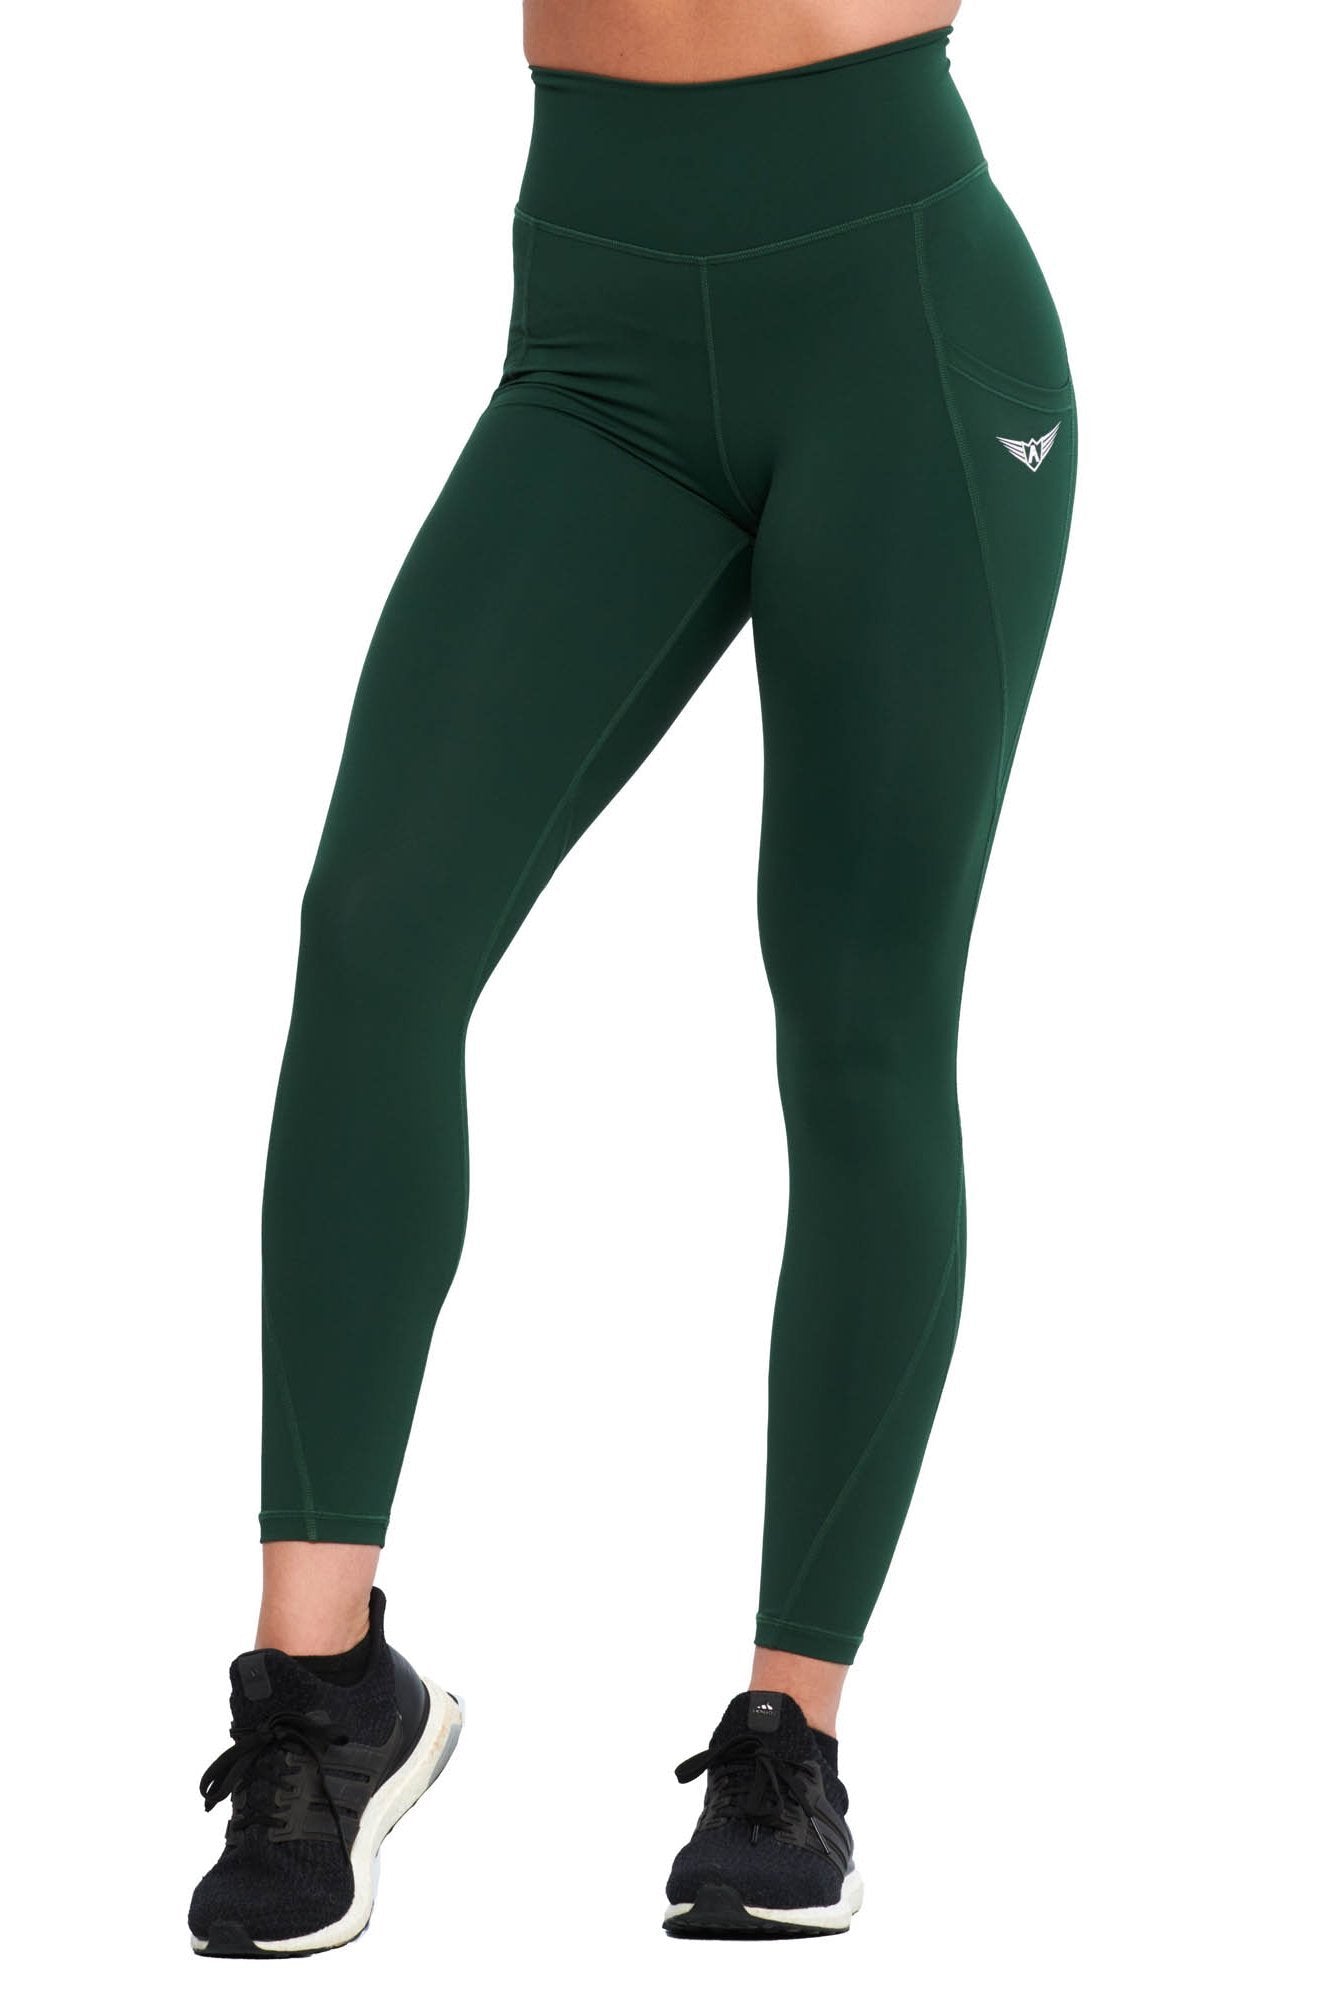 green yoga leggings